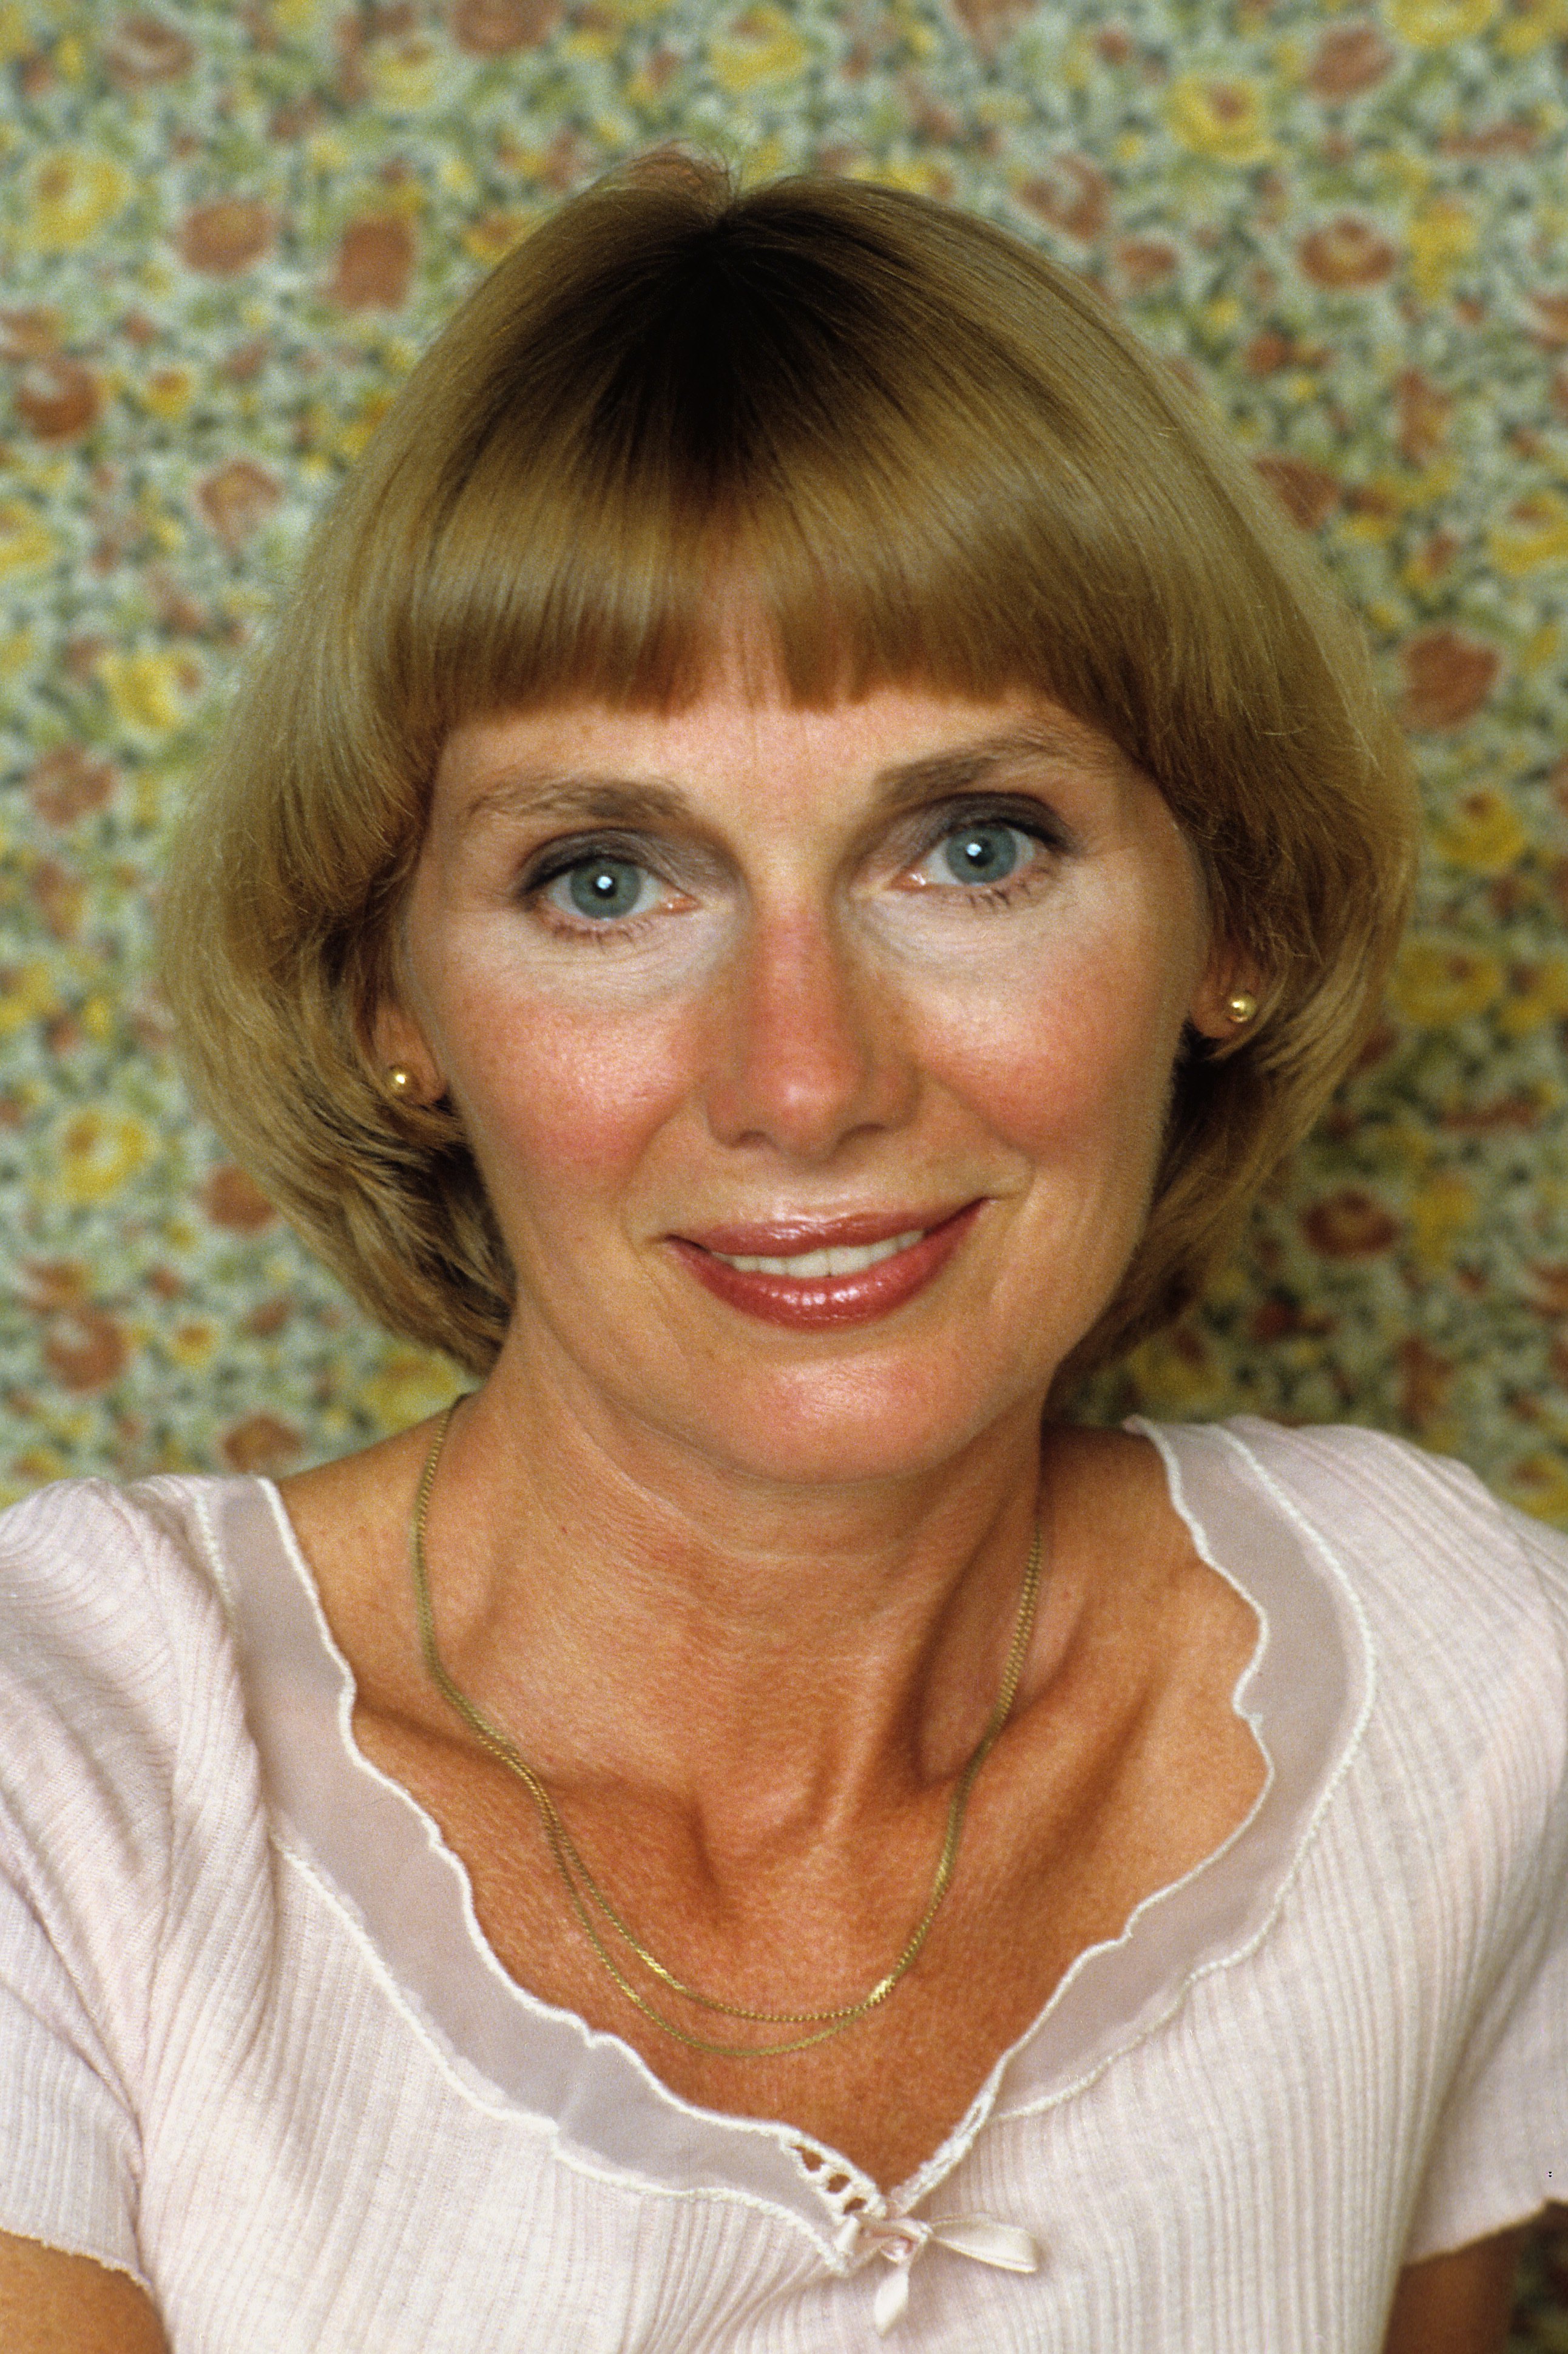 Un retrato de Inga Swenson sonriendo, el 1 de enero de 1985 en Los Ángeles, California. | Foto: Getty Images